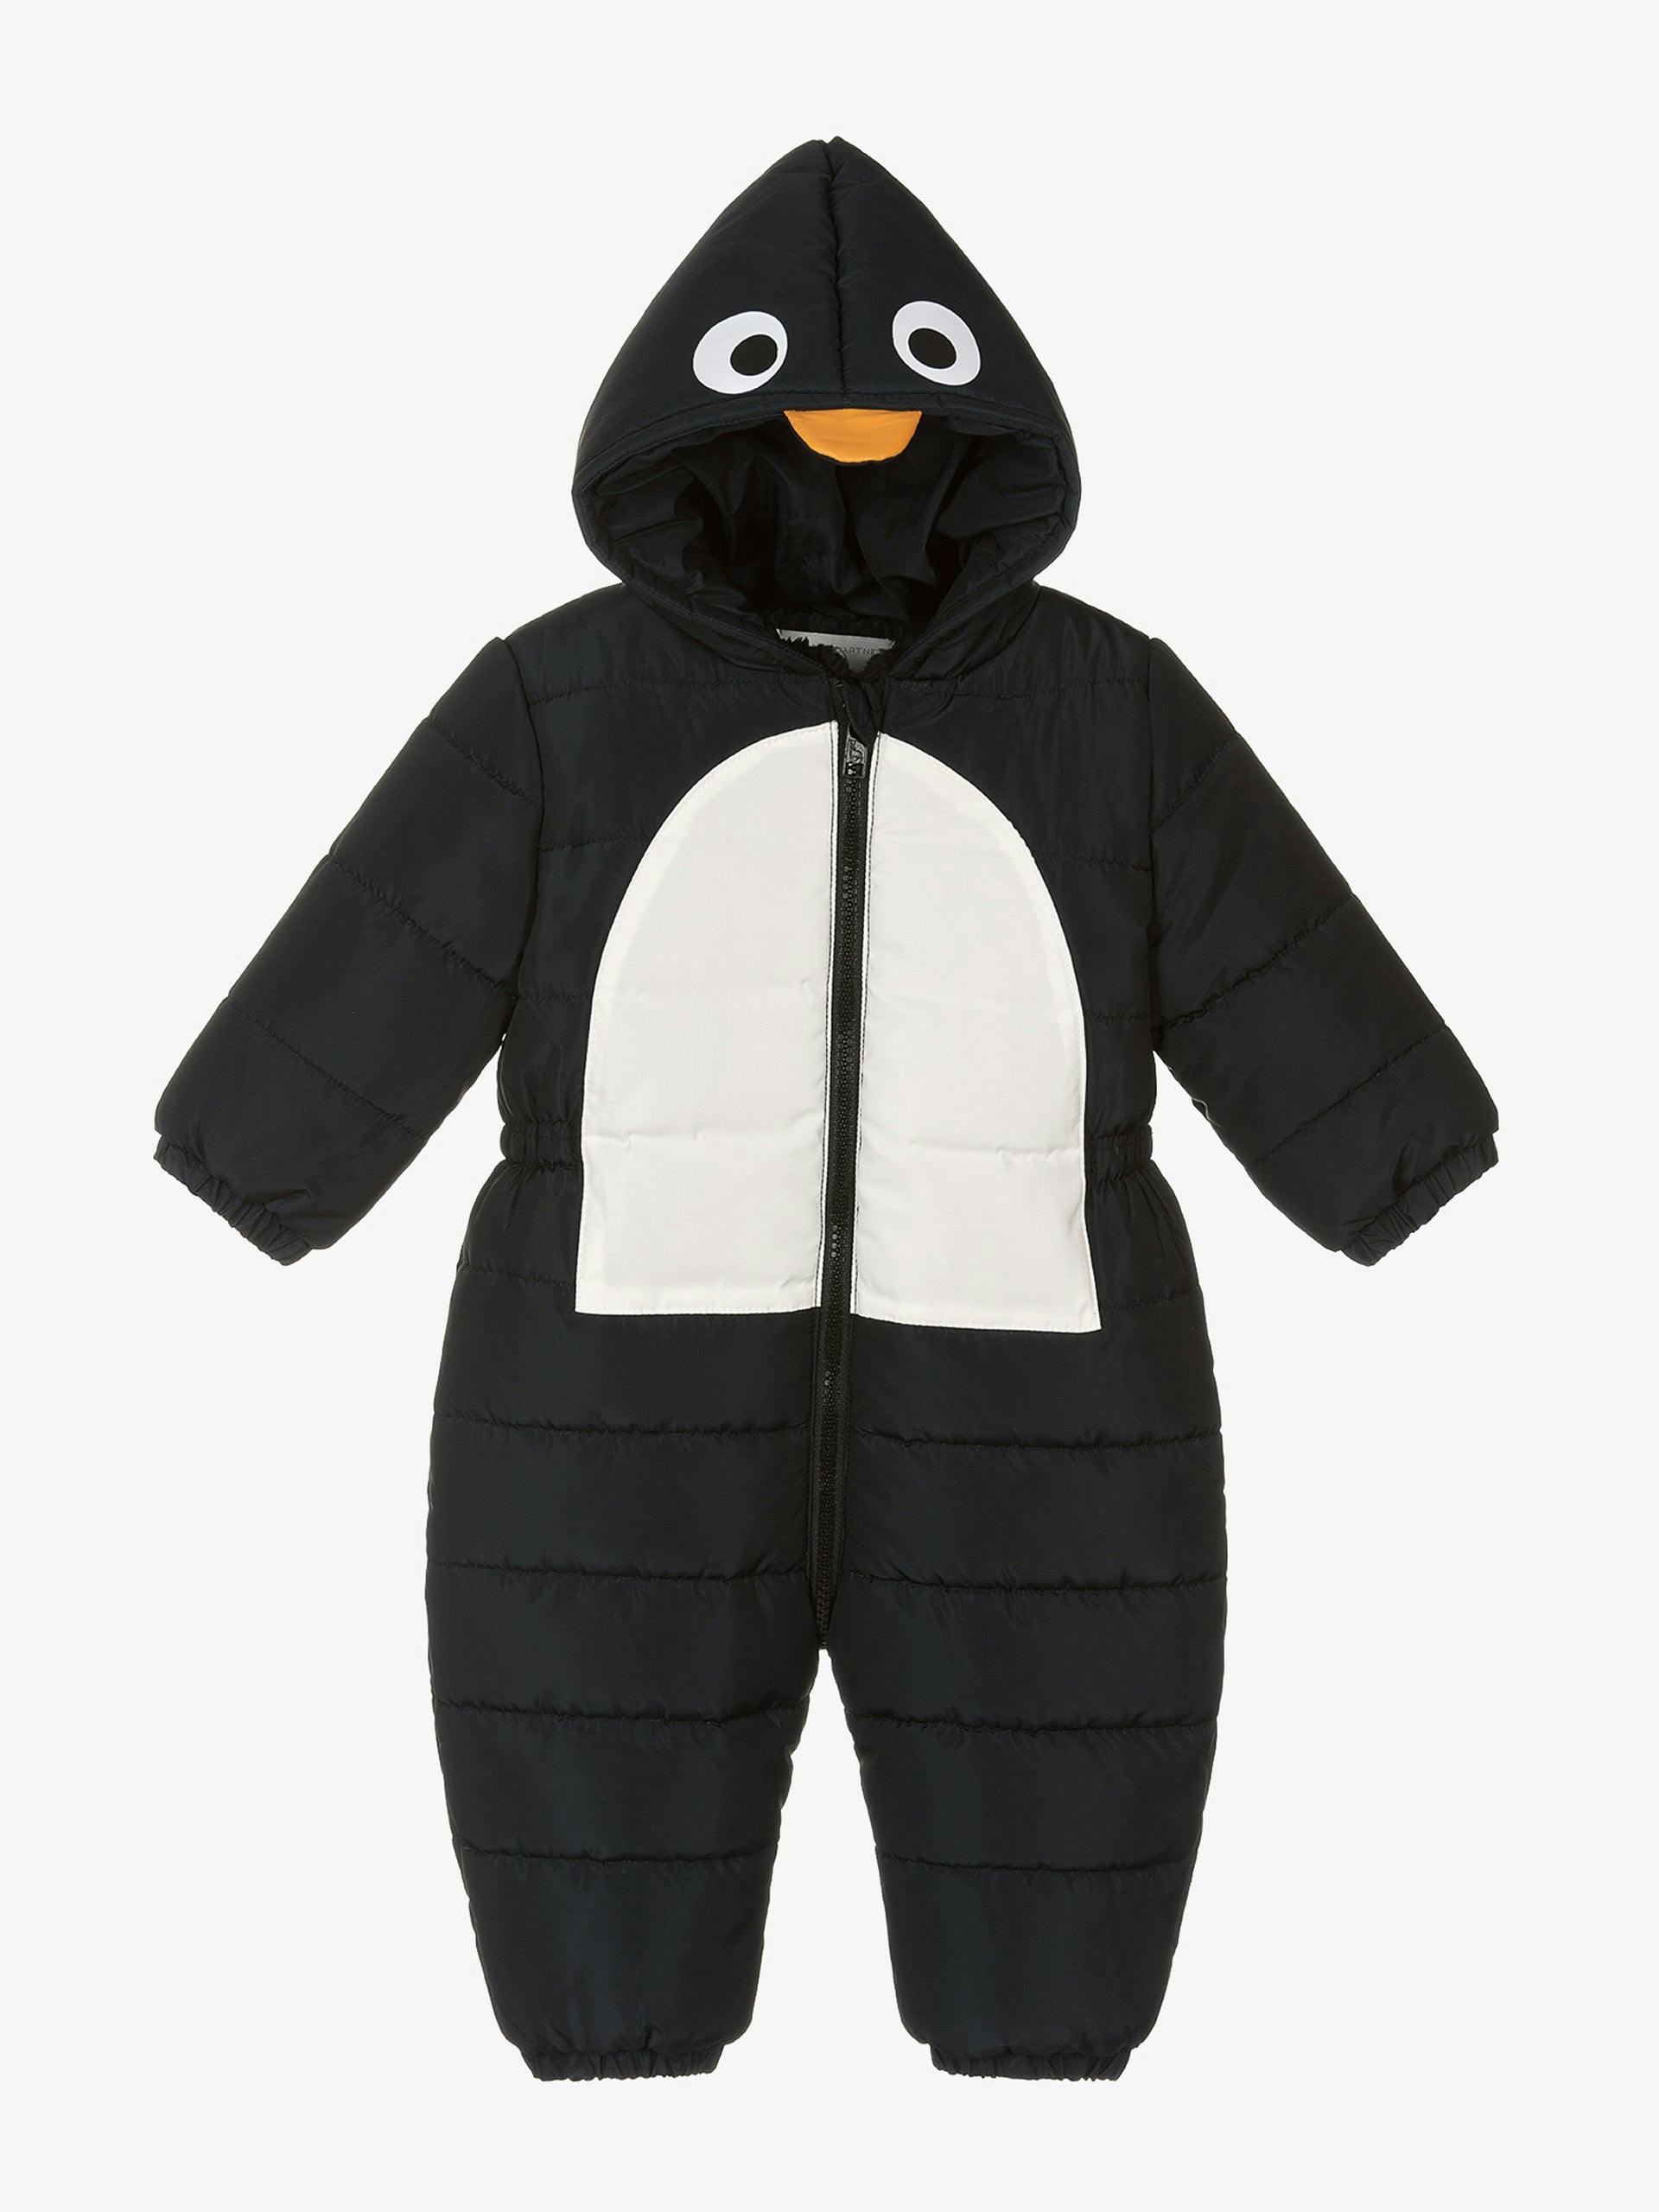 Boy’s Black Penguin Snowsuit